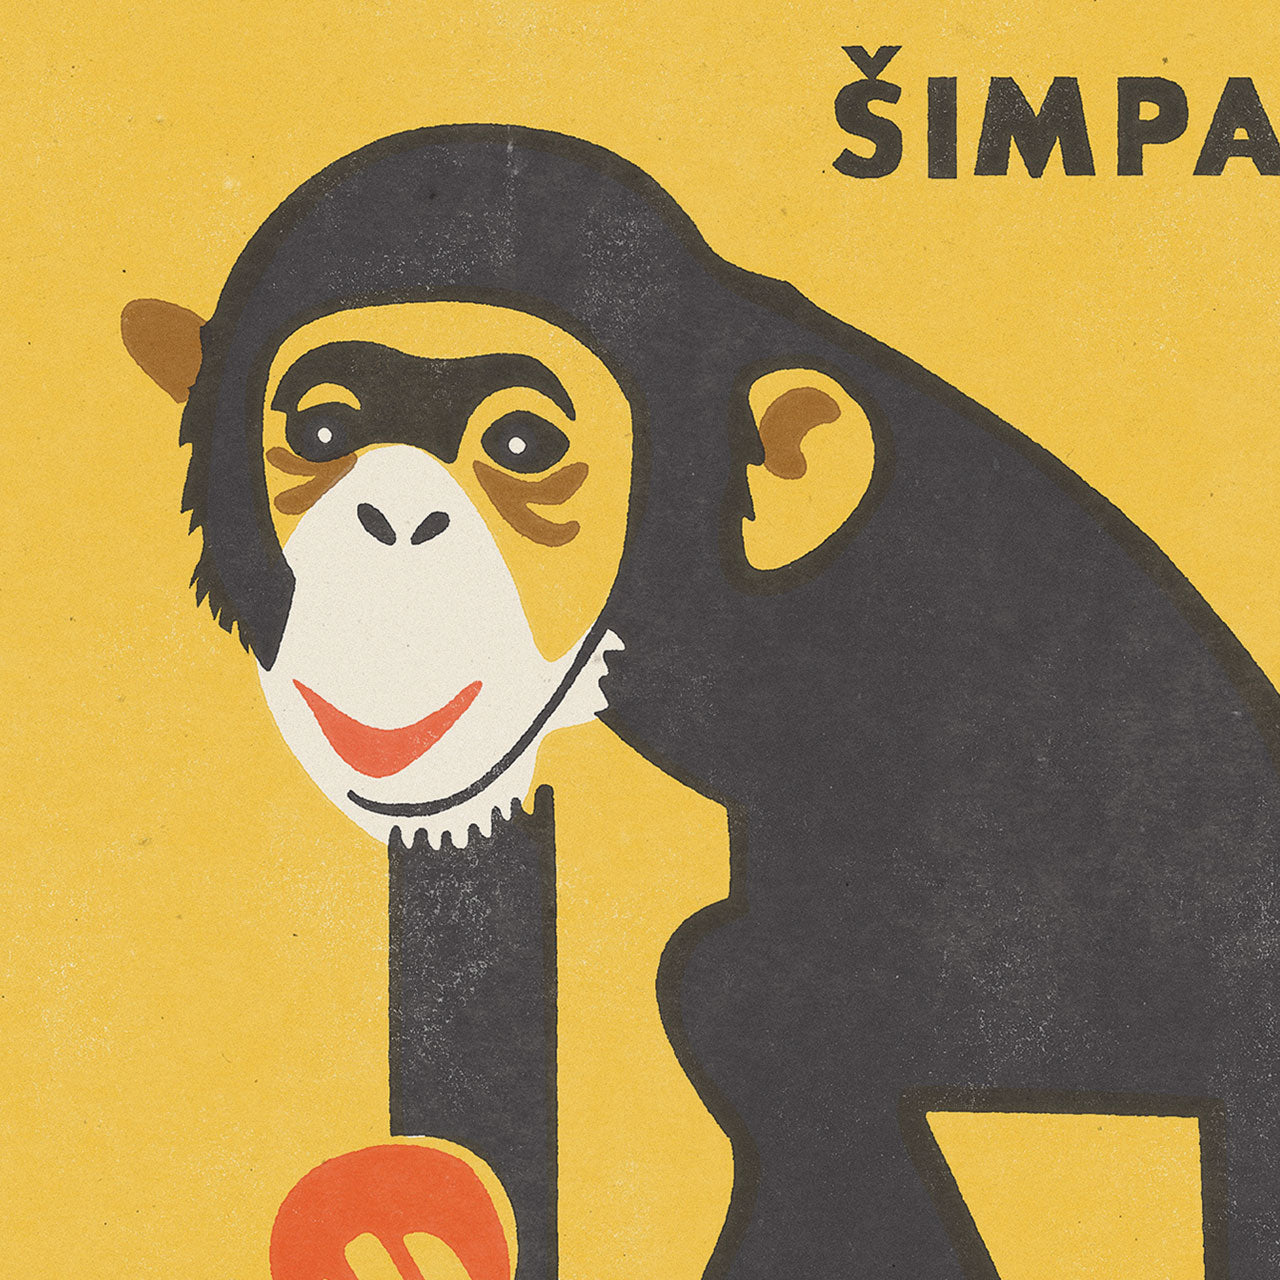 Zoo Praha - Šimpanz - Plakát 30x40 cm